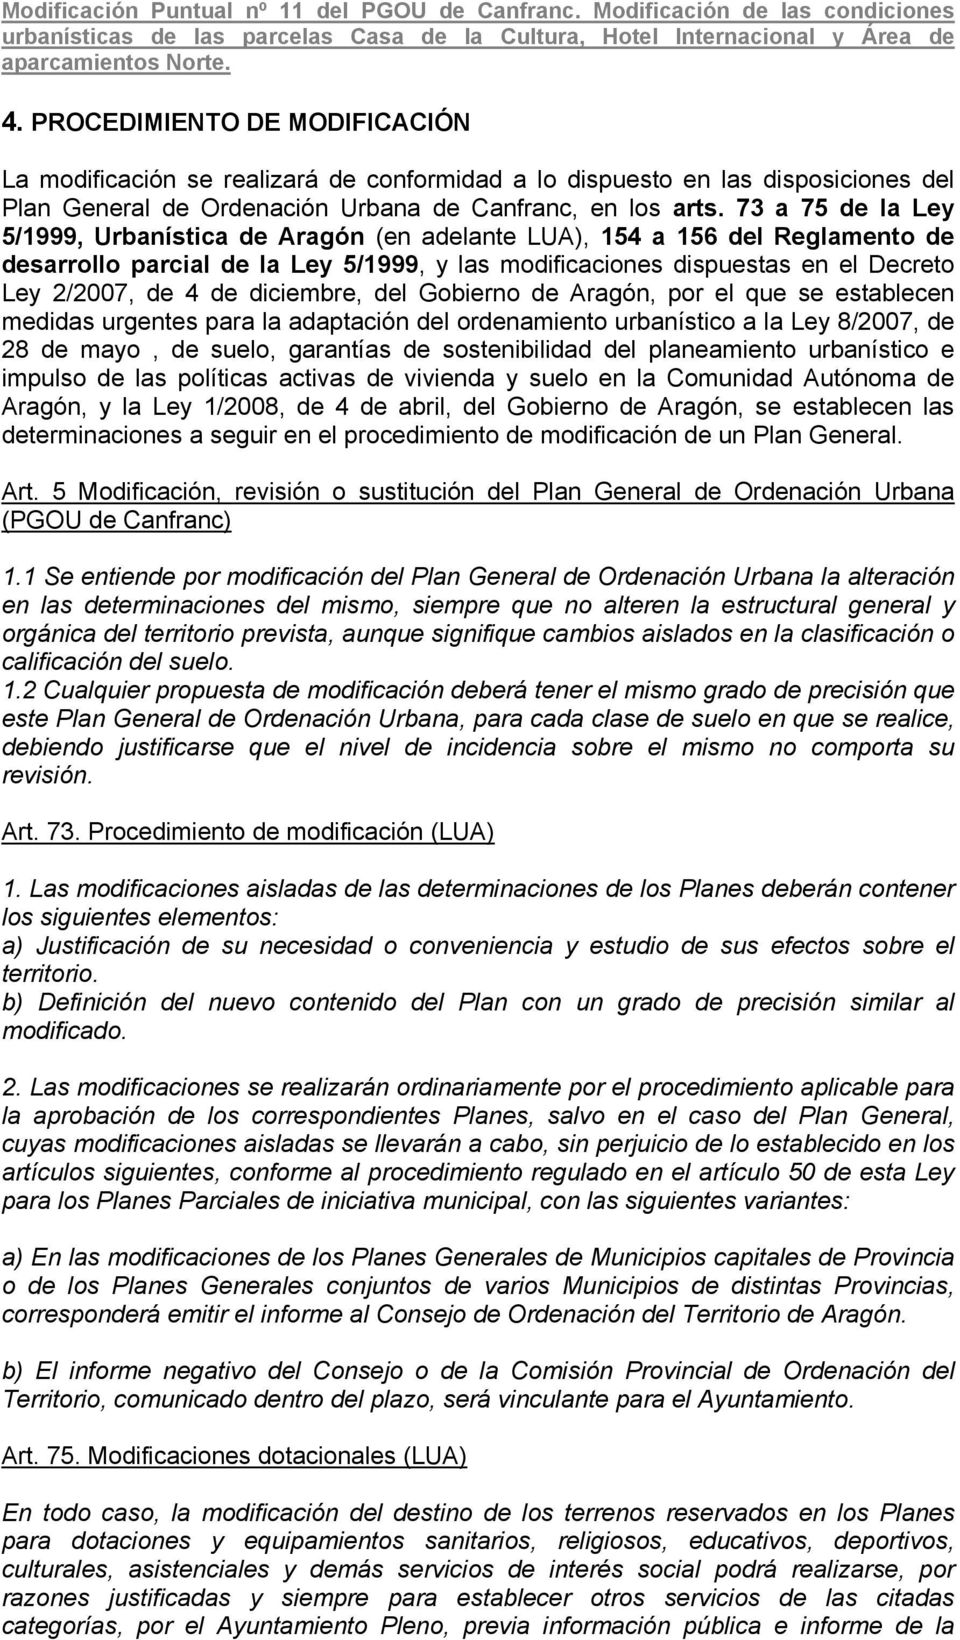 diciembre, del Gobierno de Aragón, por el que se establecen medidas urgentes para la adaptación del ordenamiento urbanístico a la Ley 8/2007, de 28 de mayo, de suelo, garantías de sostenibilidad del